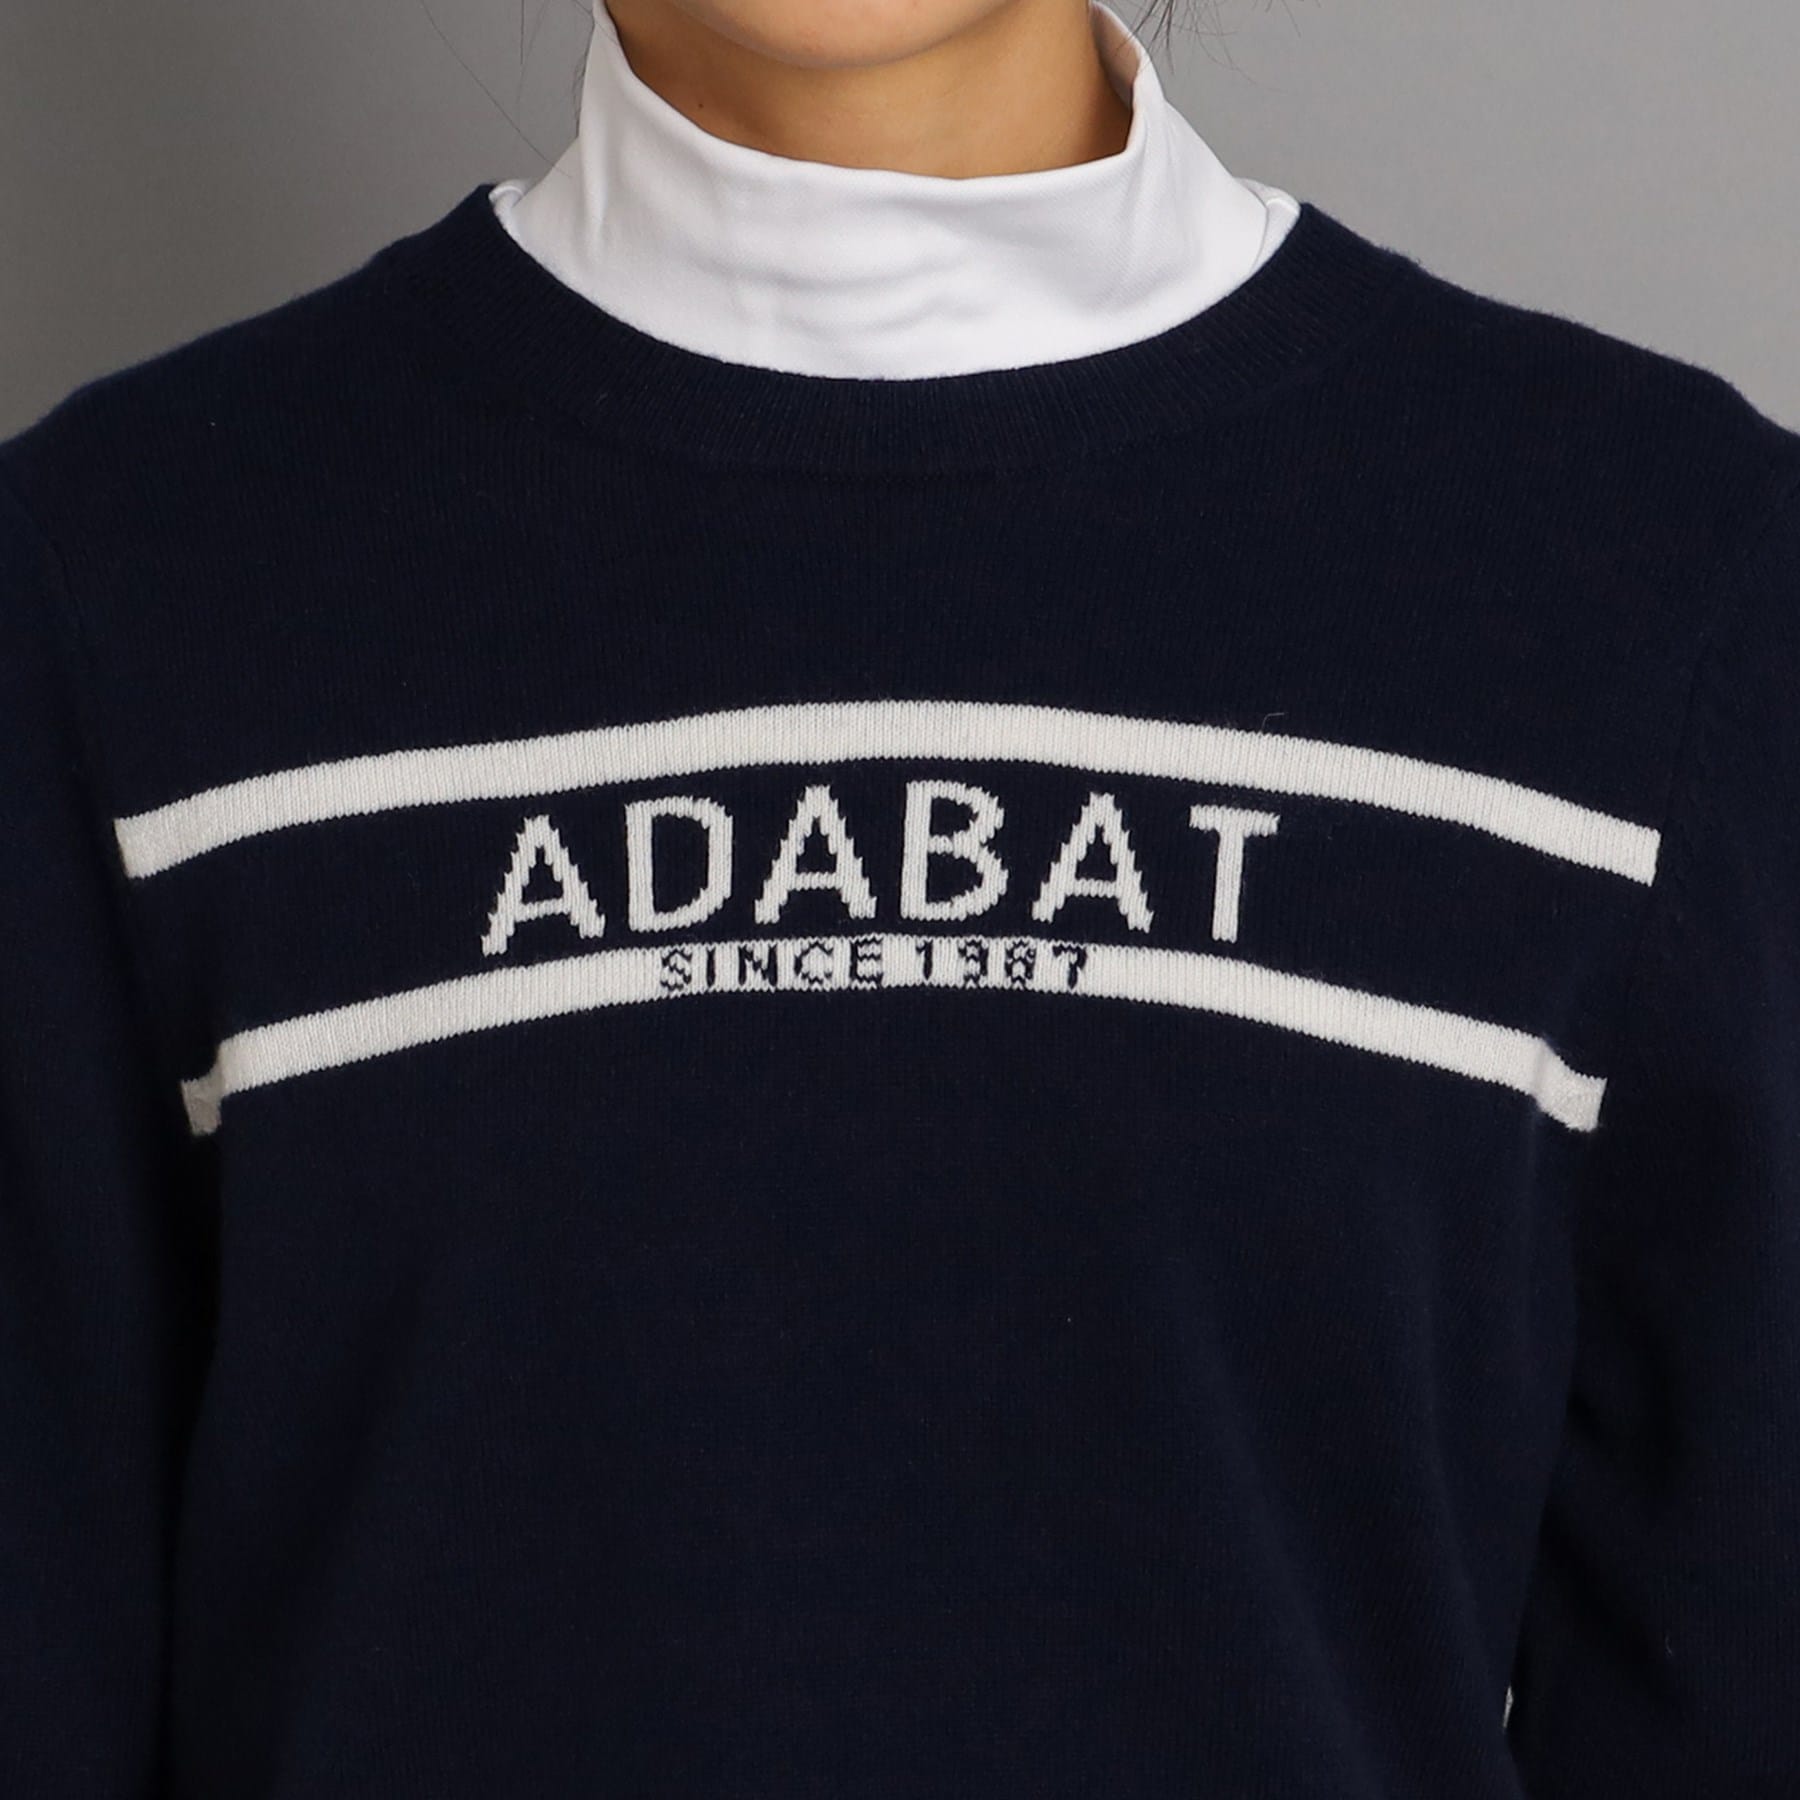 アダバット(レディース)(adabat(Ladies))のロゴデザイン クルーネックセーター20